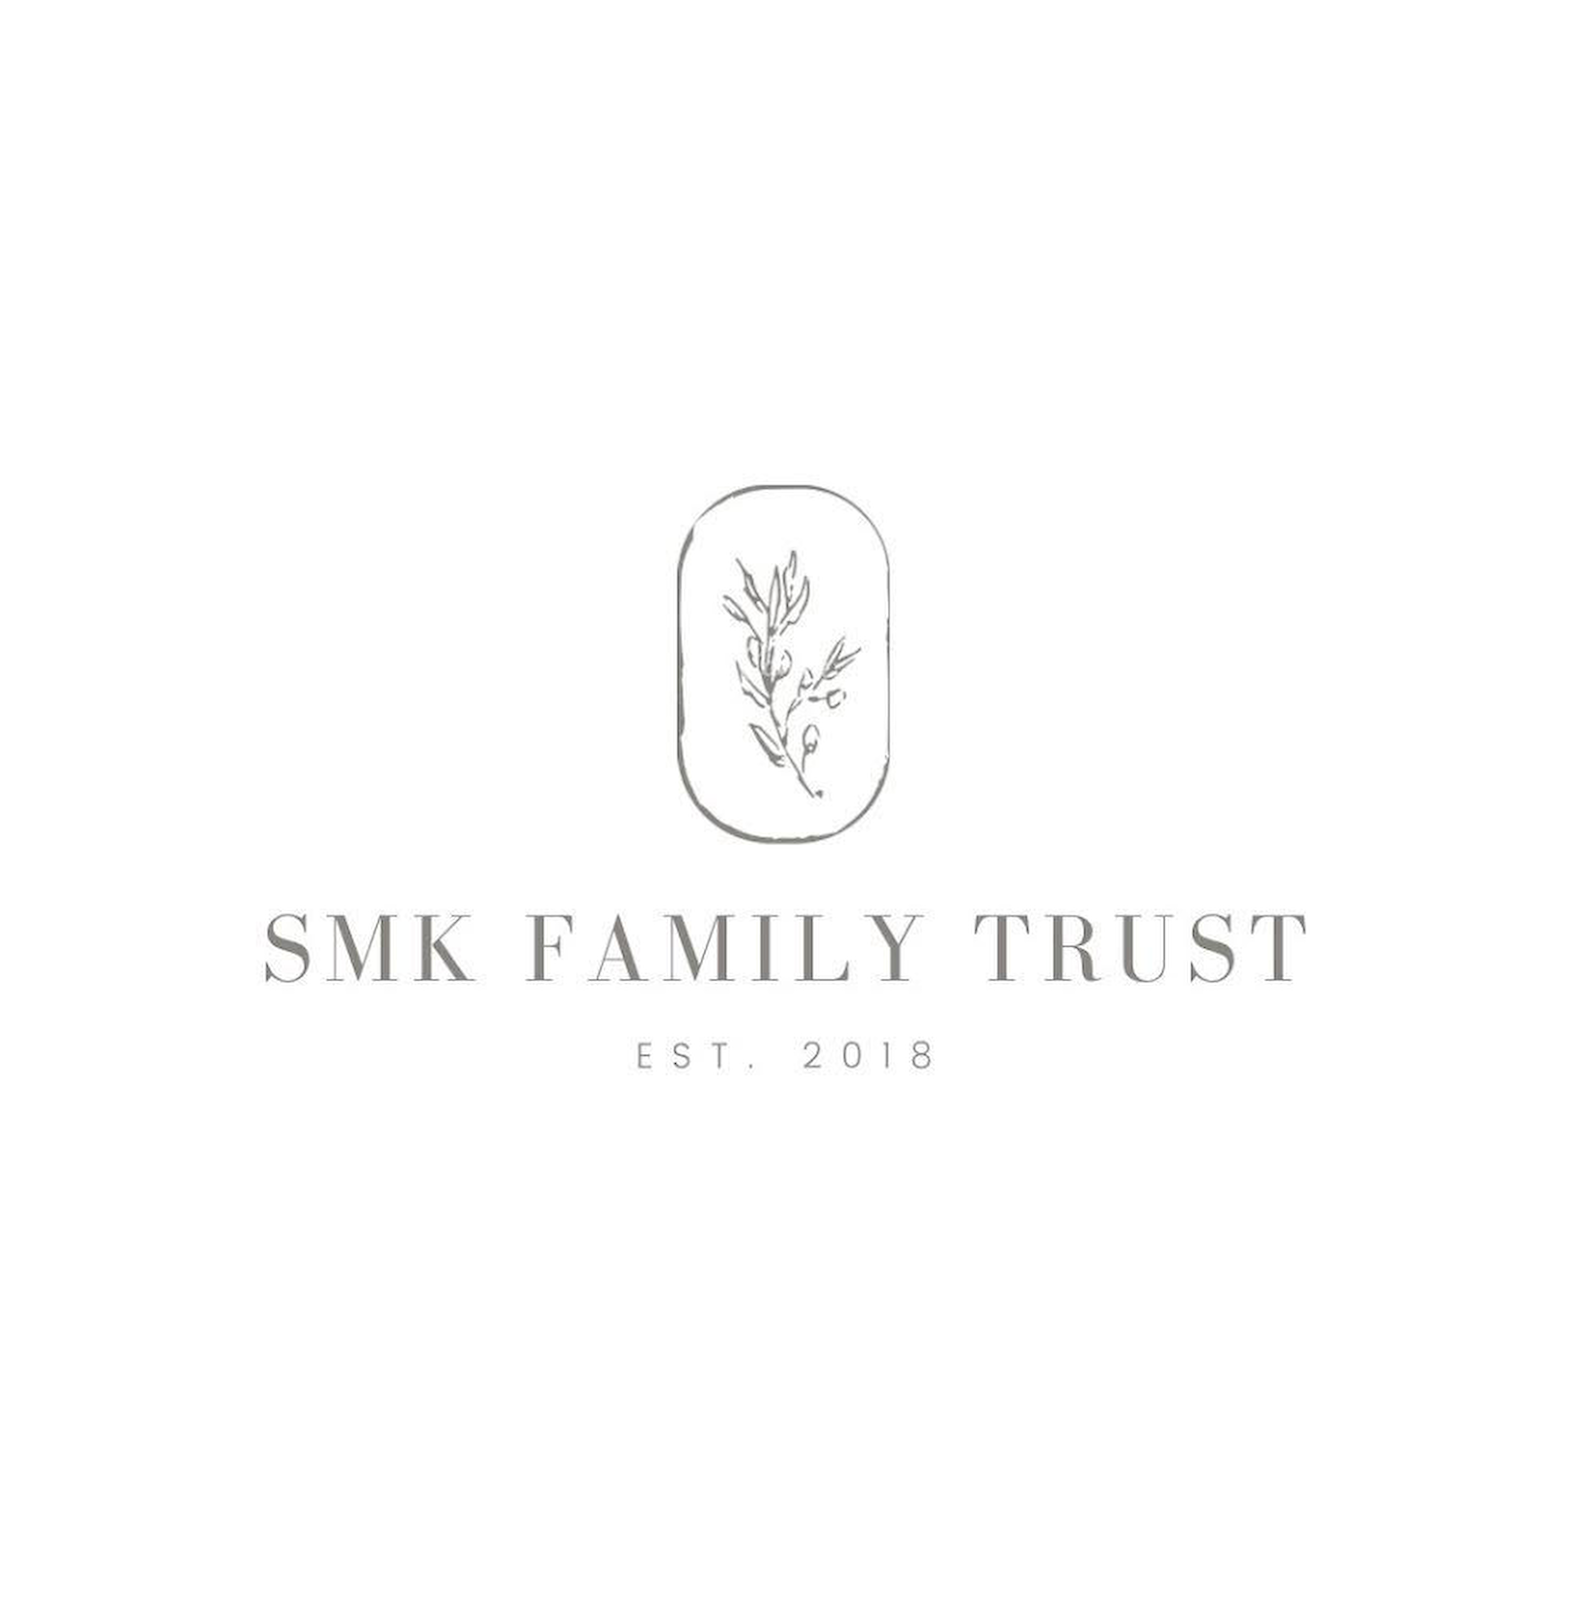 SMK Family Trust